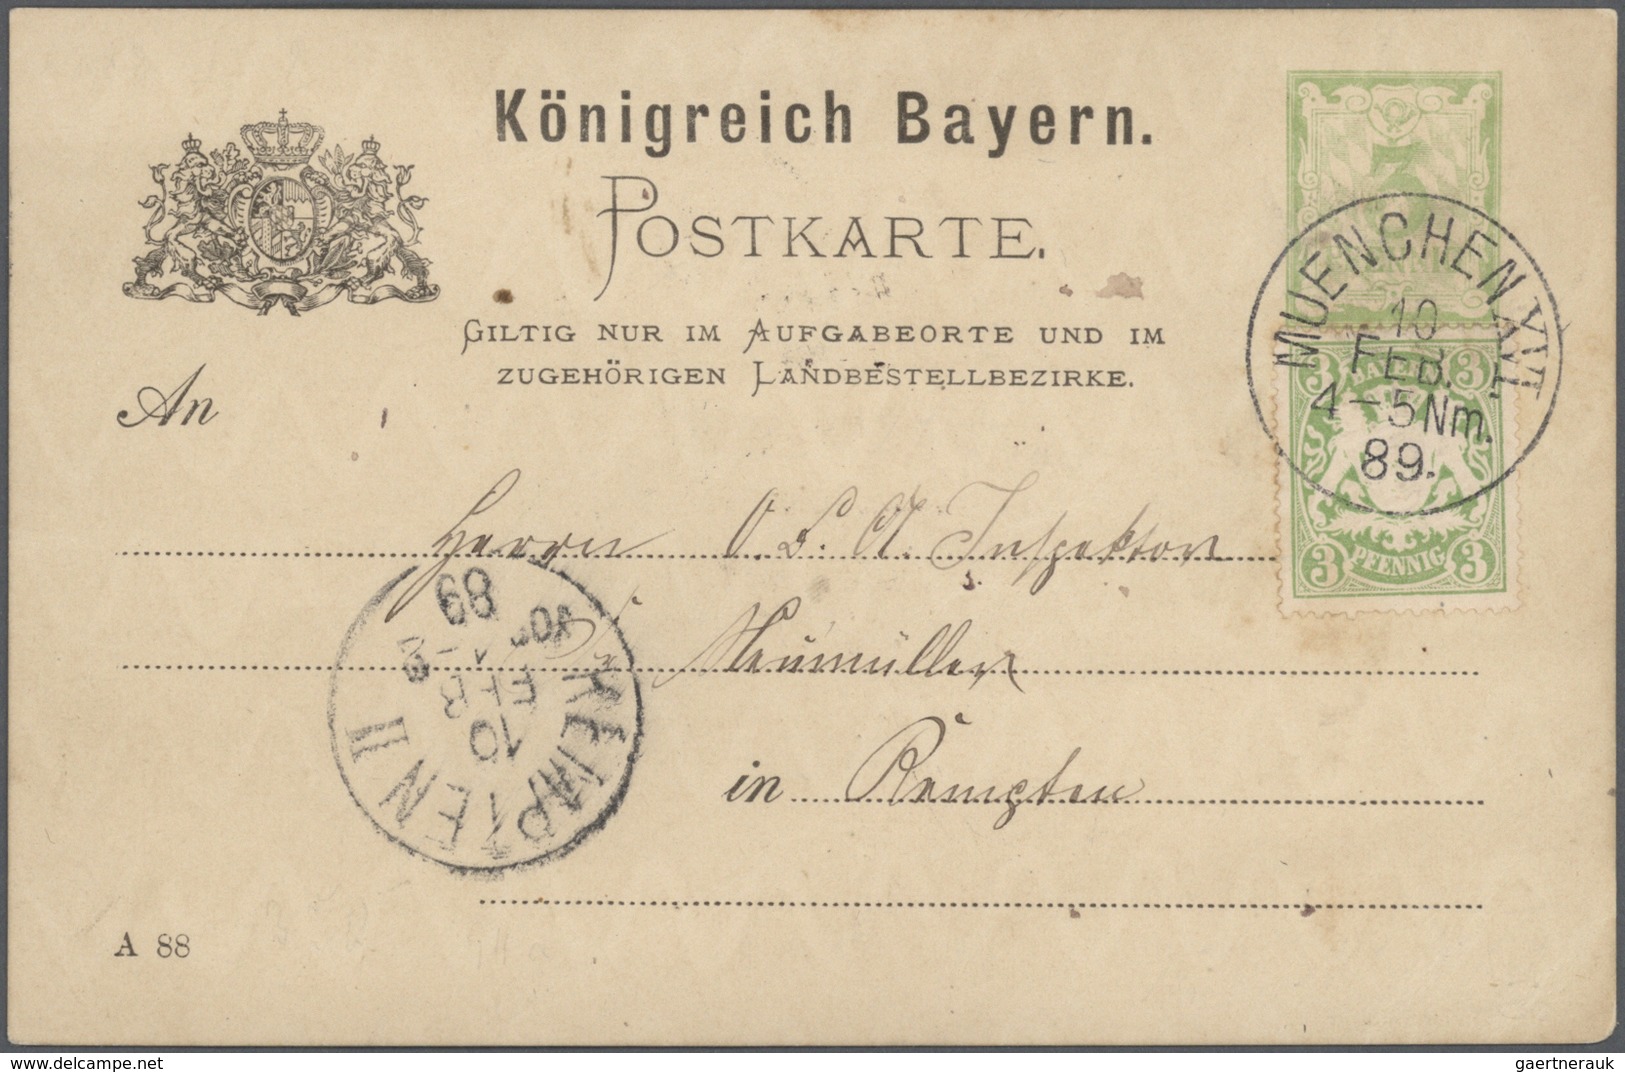 Bayern - Ganzsachen: 1870/1920, vielseitige Partie von über 100 meist gebrauchten Ganzsachen, vorwie